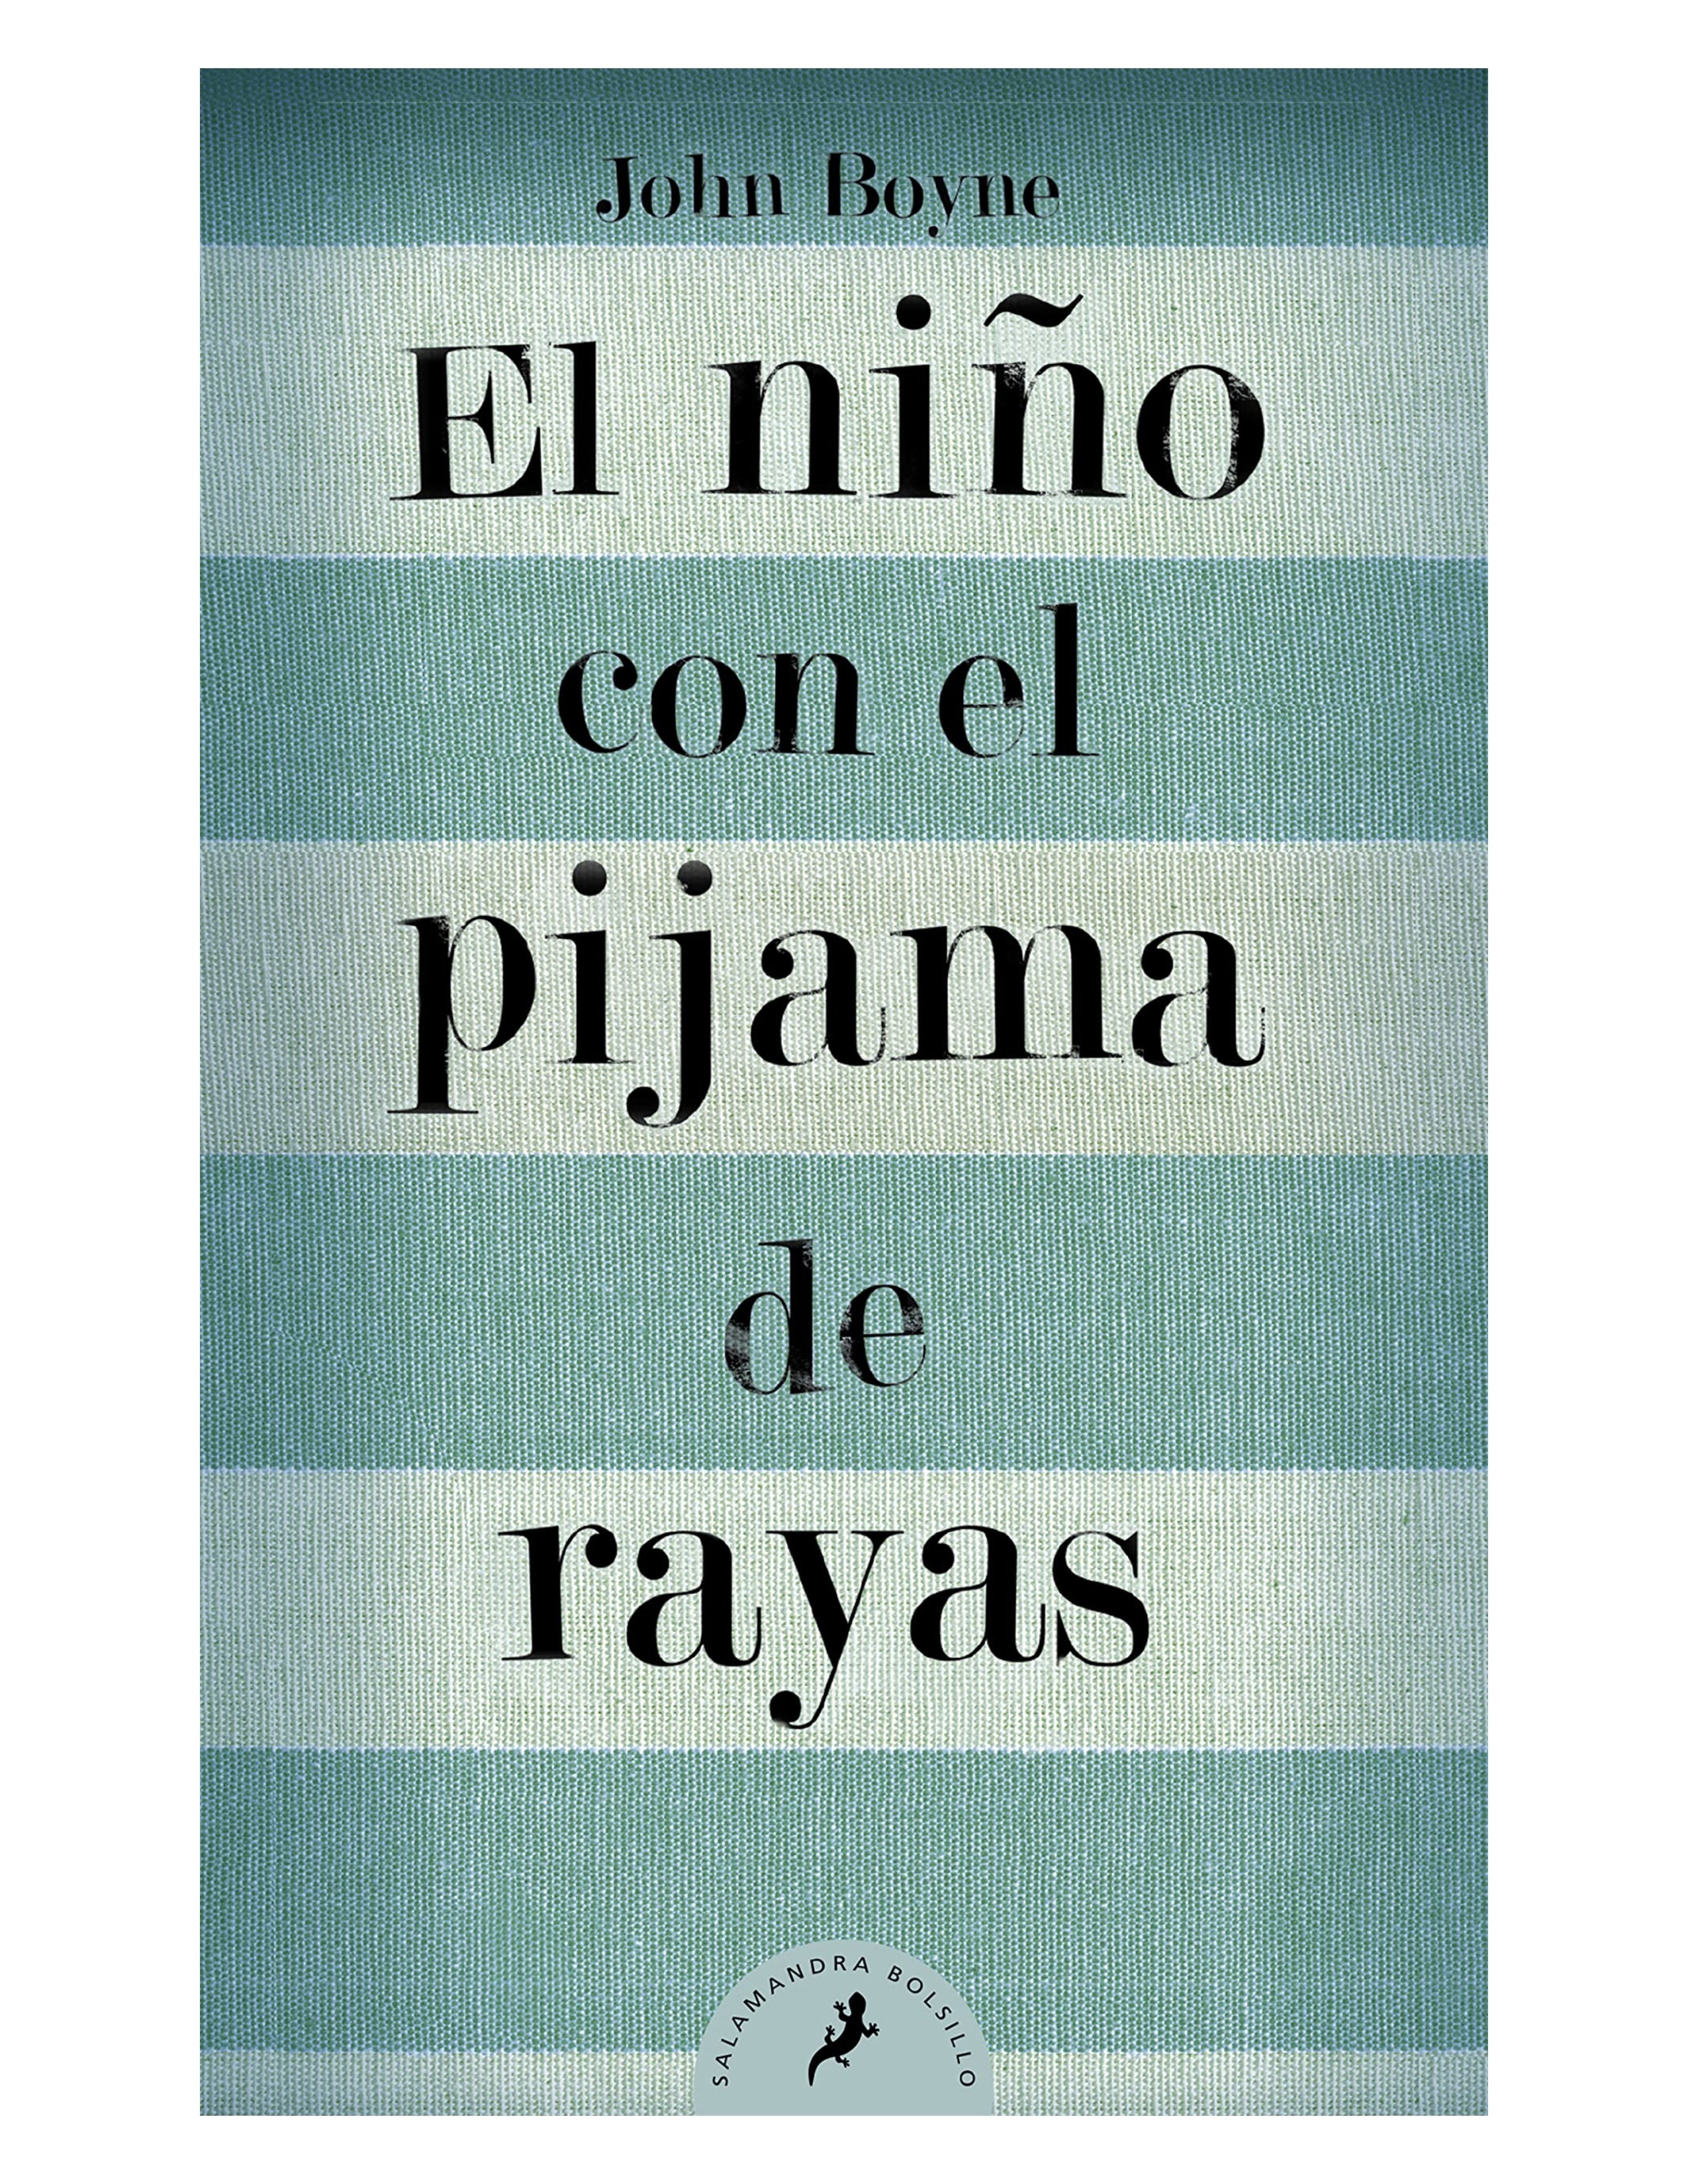 EL NIÑO CON EL PIJAMA DE RAYAS - JOHN BOYNE - 9788498382549